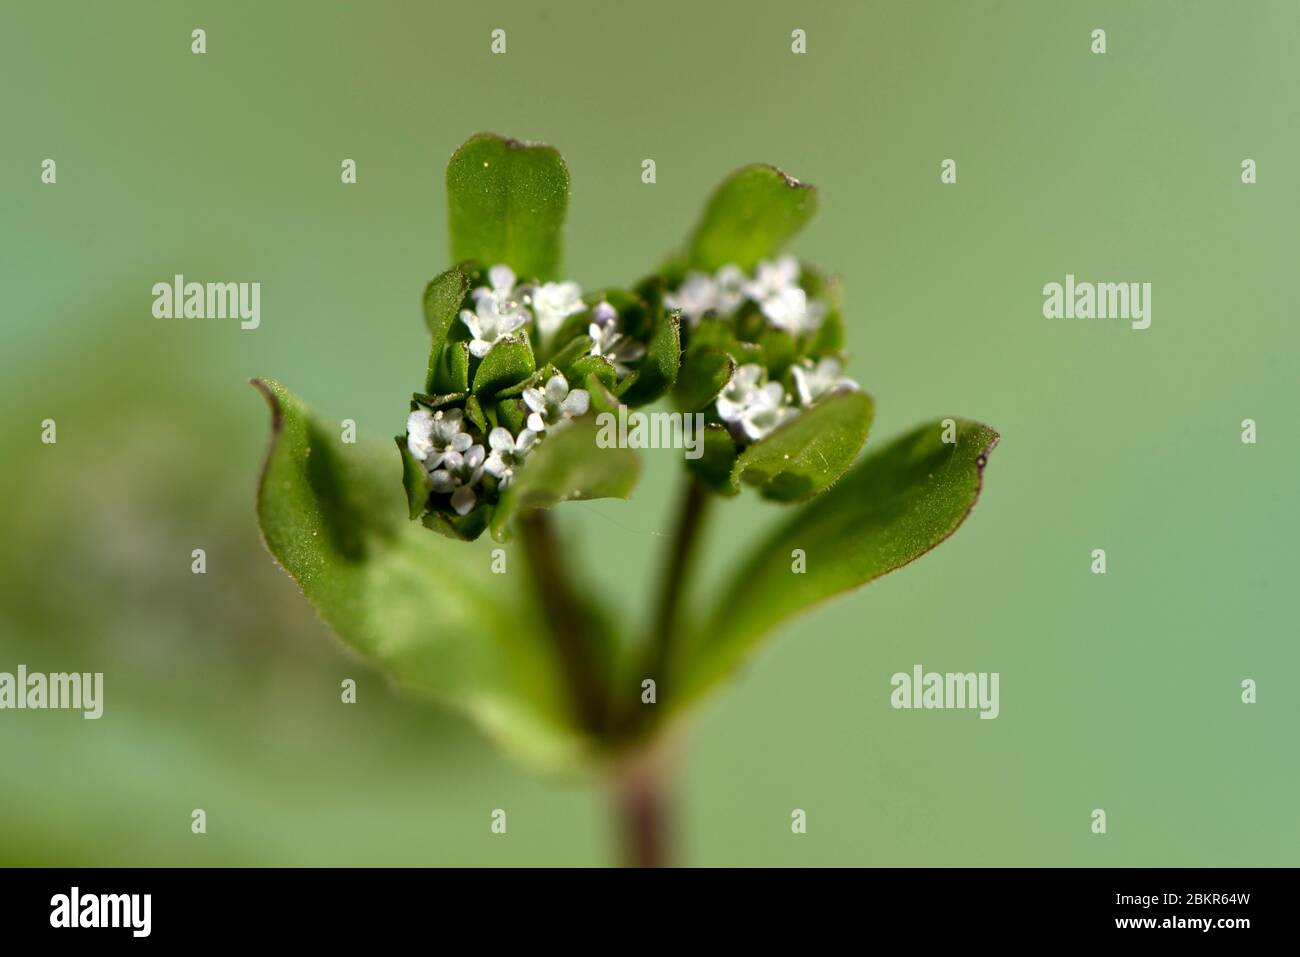 France, Territoire de Belfort, Belfort, vegetable garden, Valerianella locusta, flowering Stock Photo